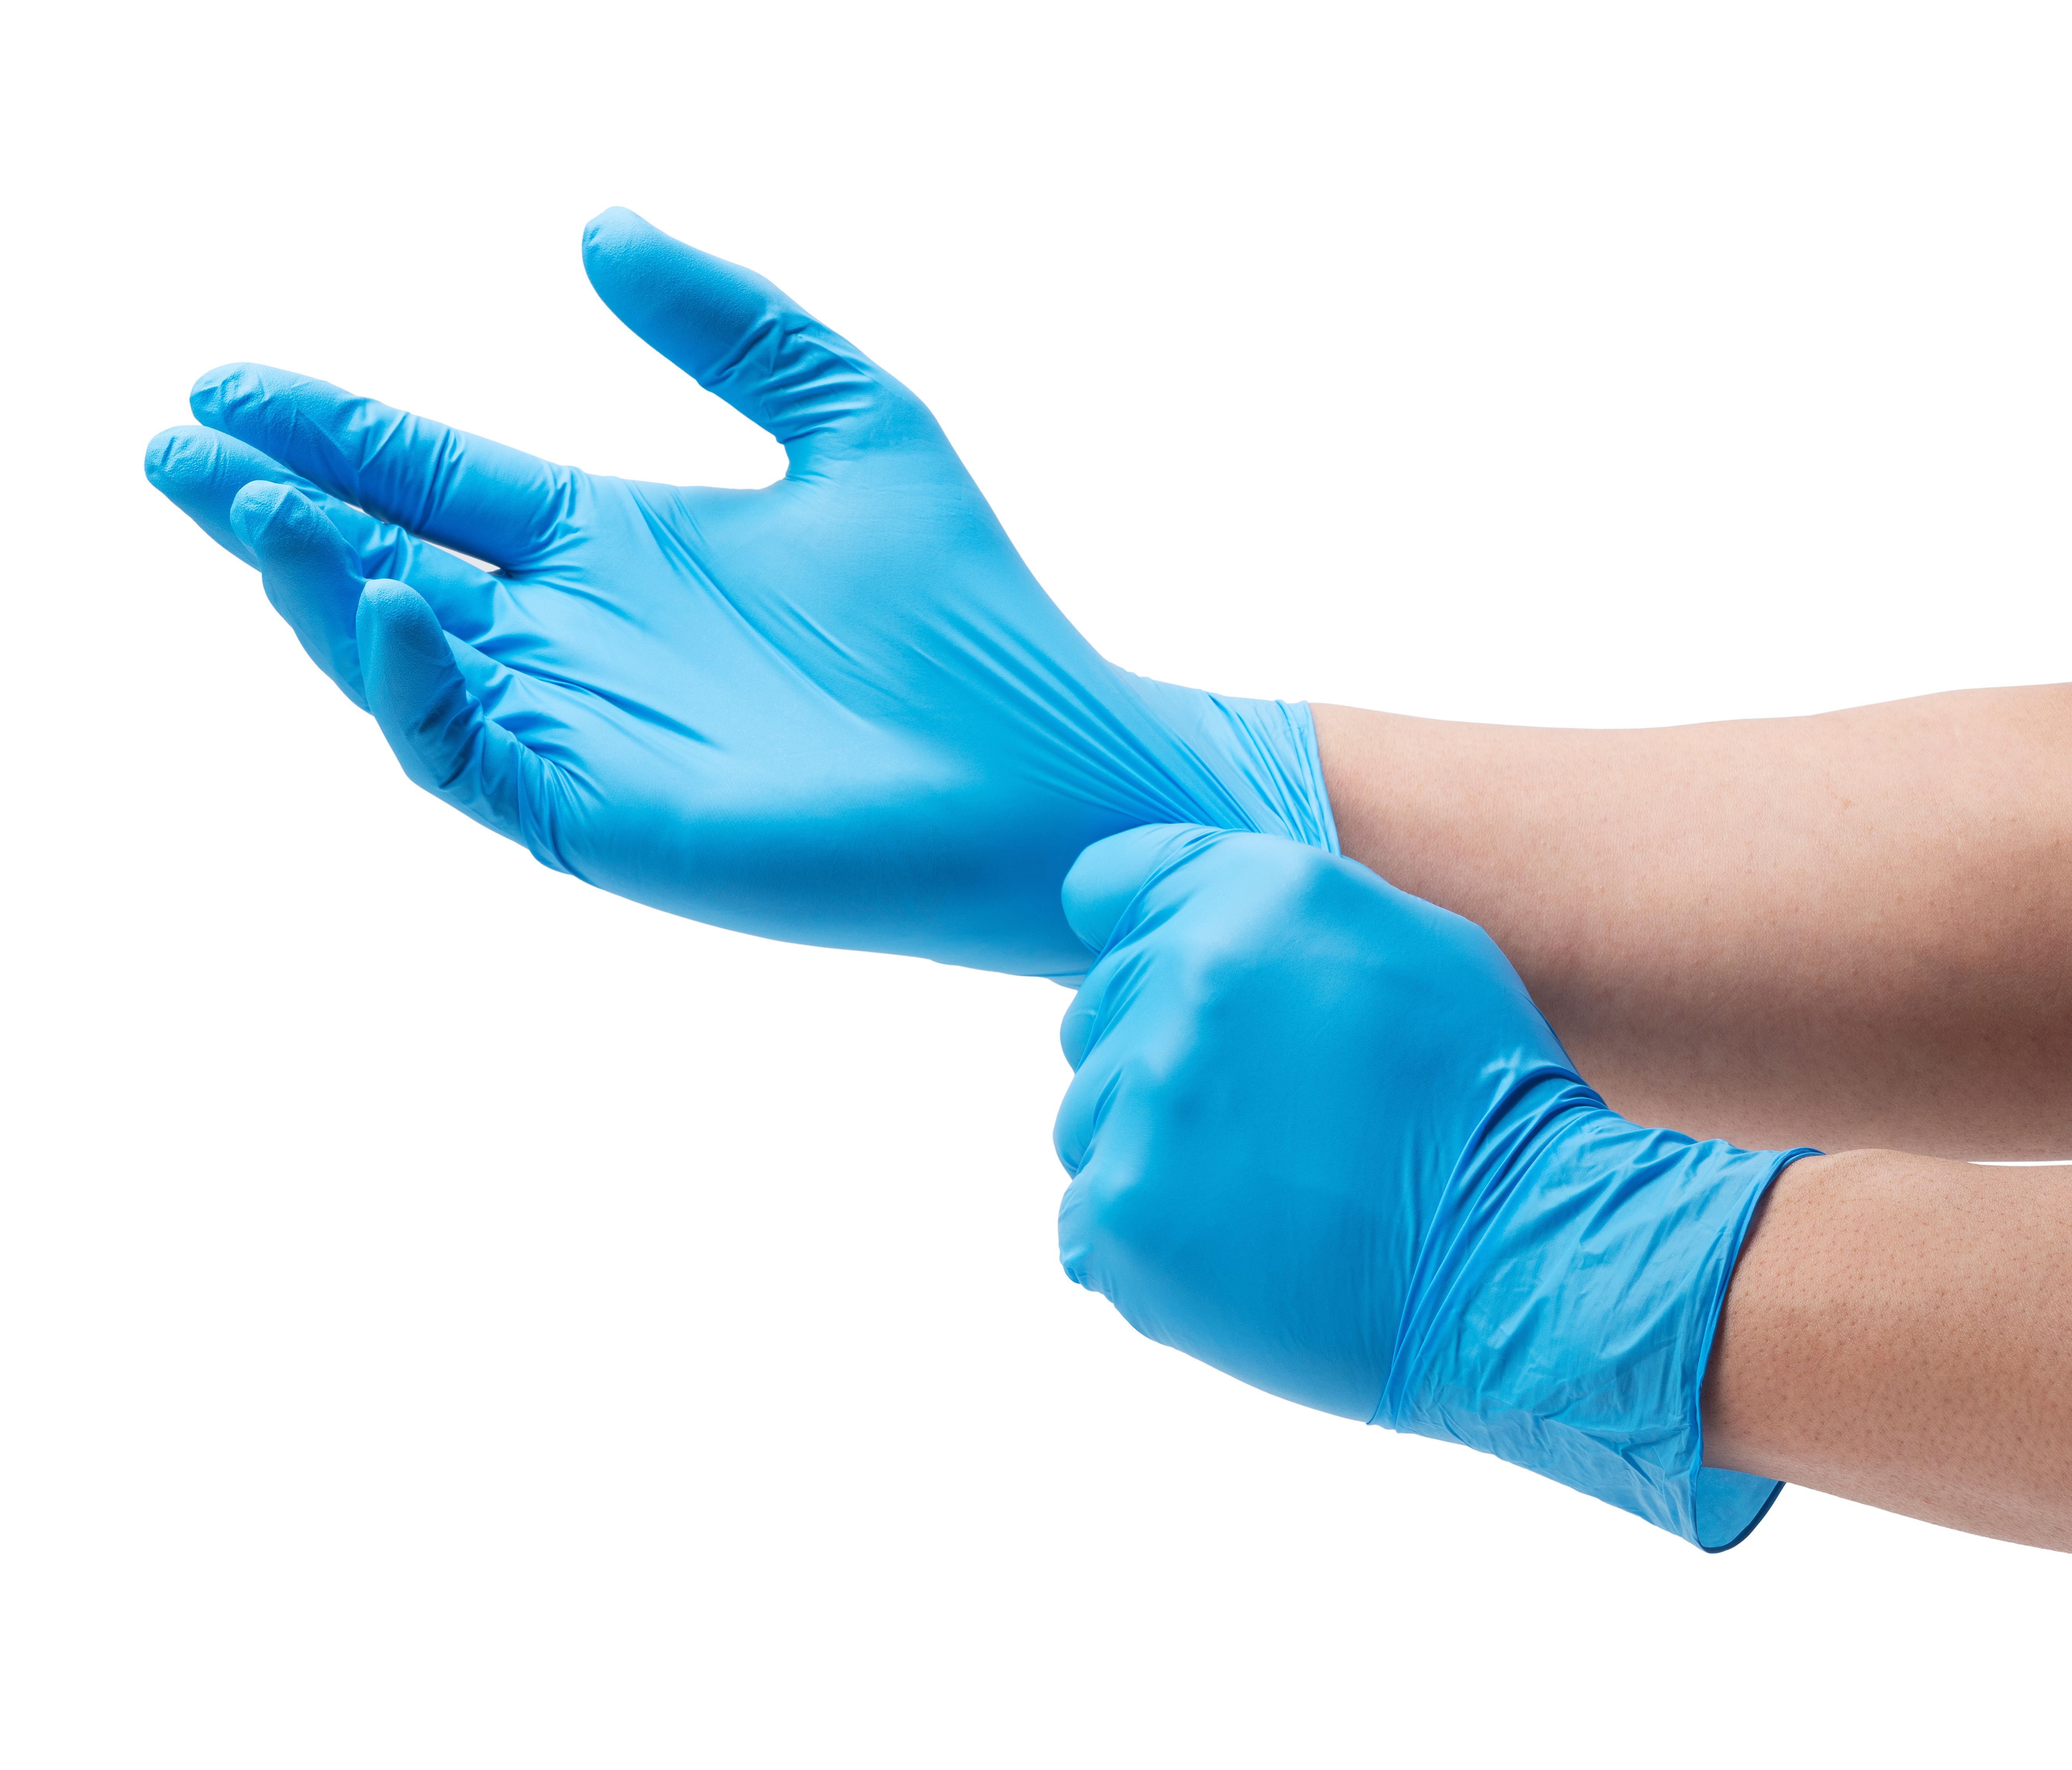 Diese aus Natur-Latex und Polyethylen bestehenden Handschuhe sind optimal für den Umgang für Substanzen. Sie schützen die Haut vor Reizungen und Verätzungen und werden, wie der Name impliziert, in der Regel nur einmal verwendet.